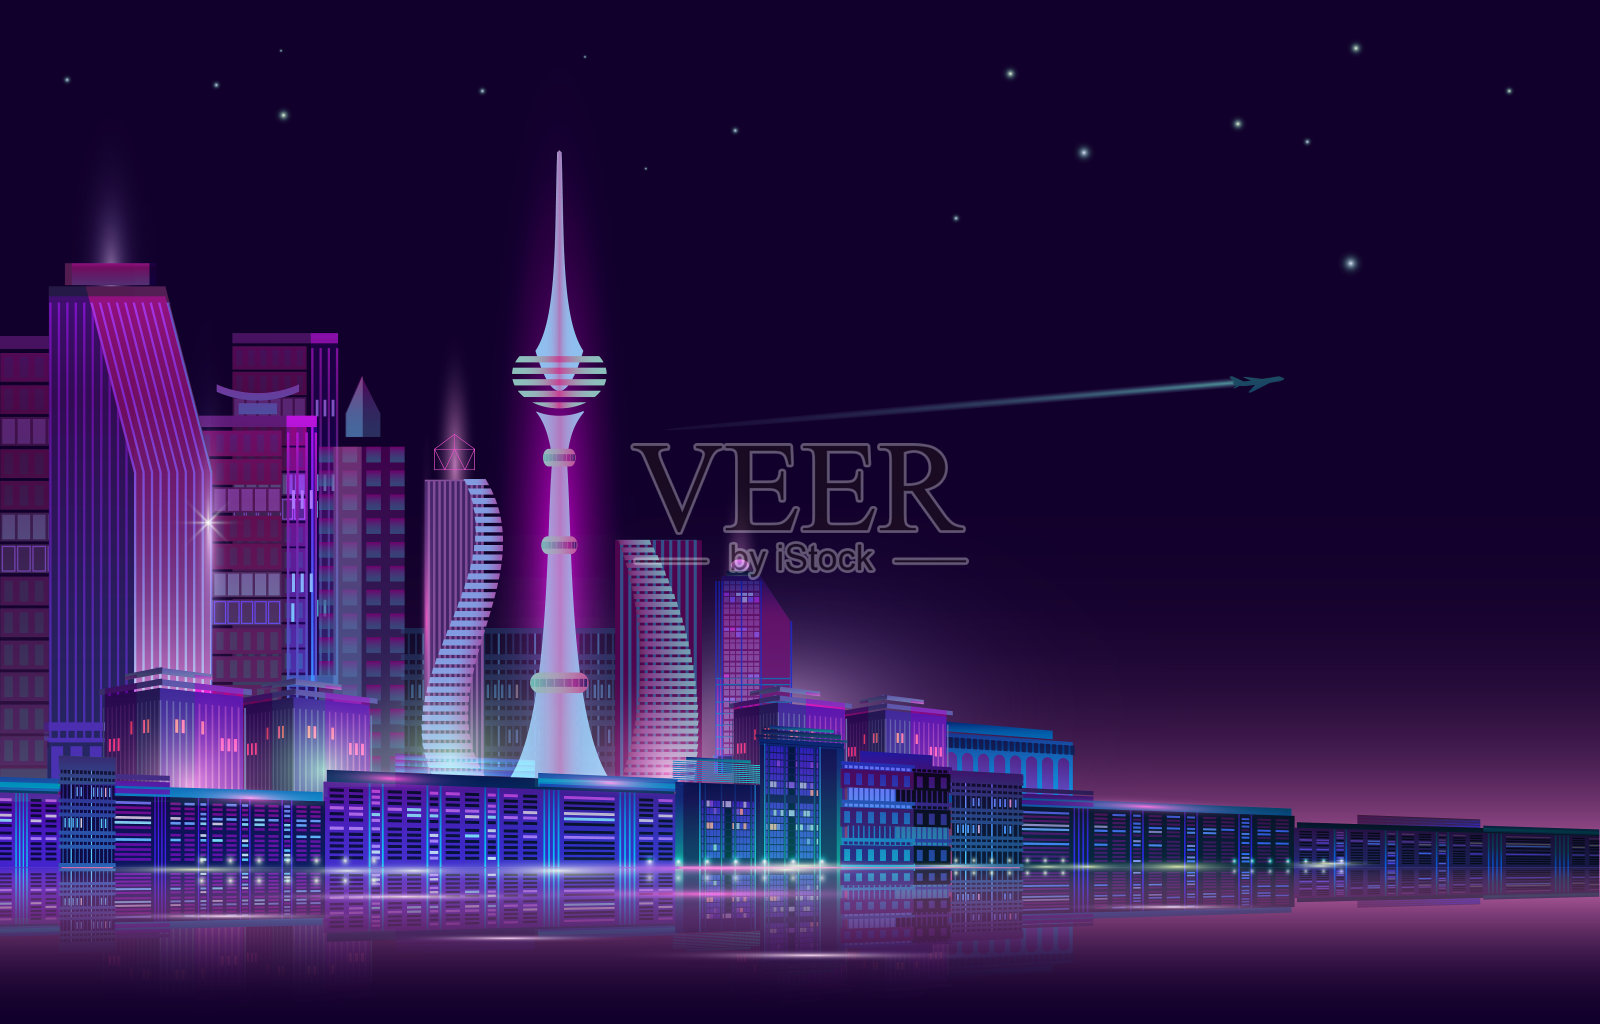 夜晚的城市全景与霓虹灯在紫色的背景。向量。插画图片素材